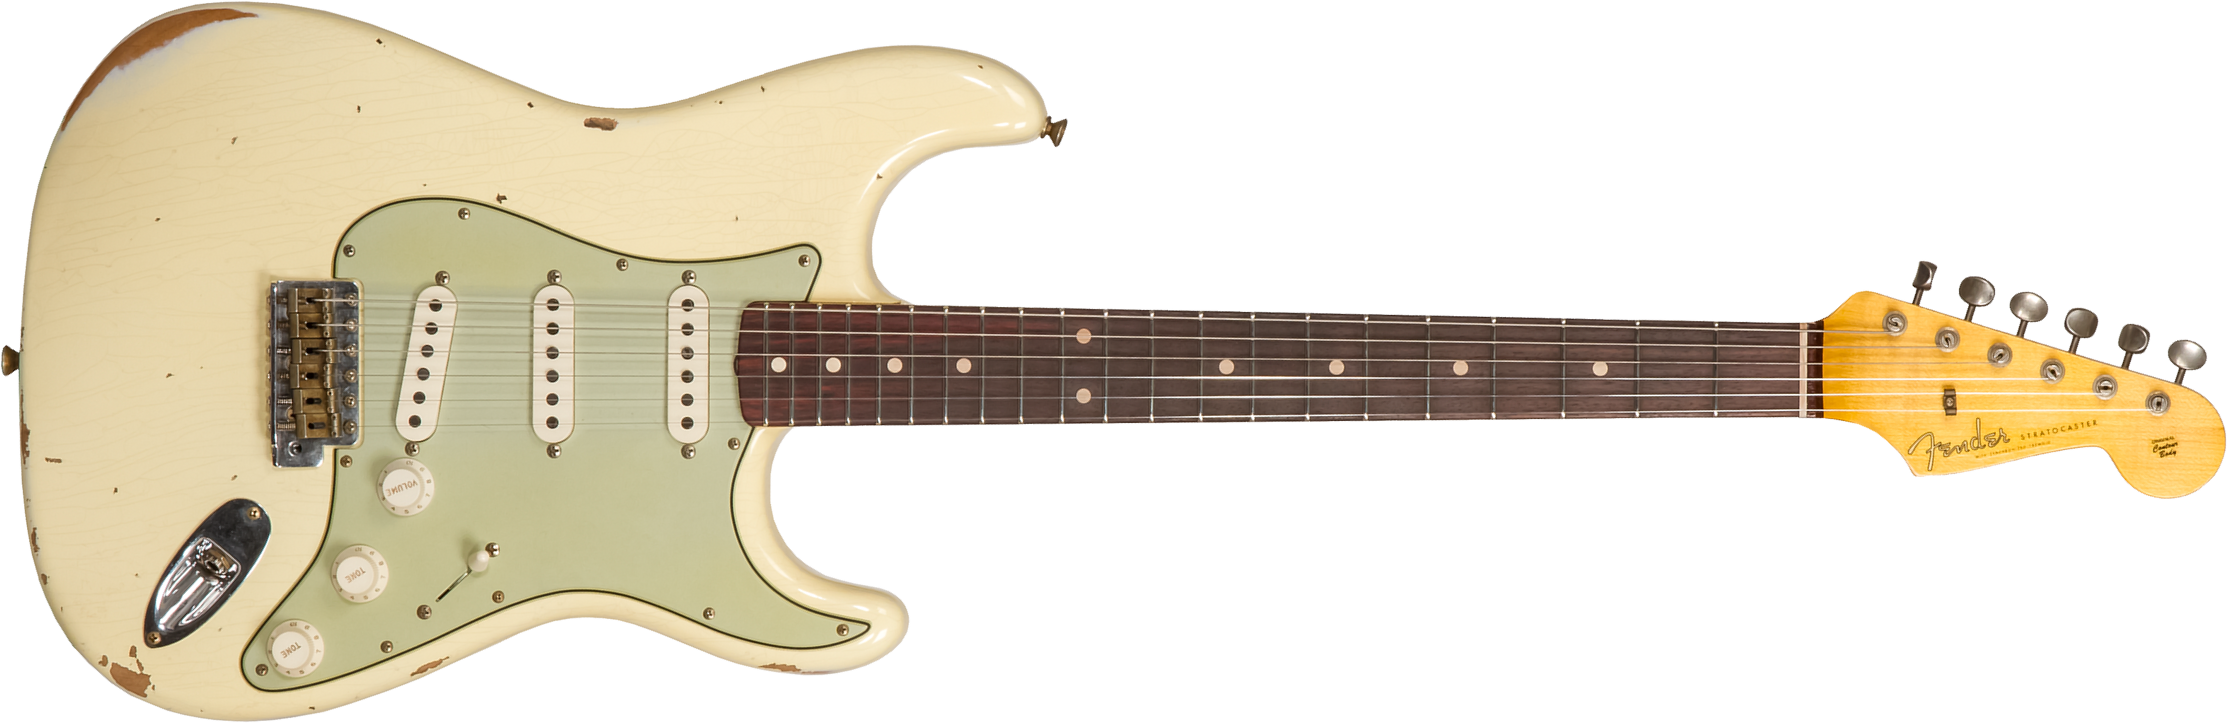 Fender Custom Shop Strat 1959 3s Trem Rw #r117393 - Relic Aged Vintage White - Elektrische gitaar in Str-vorm - Main picture